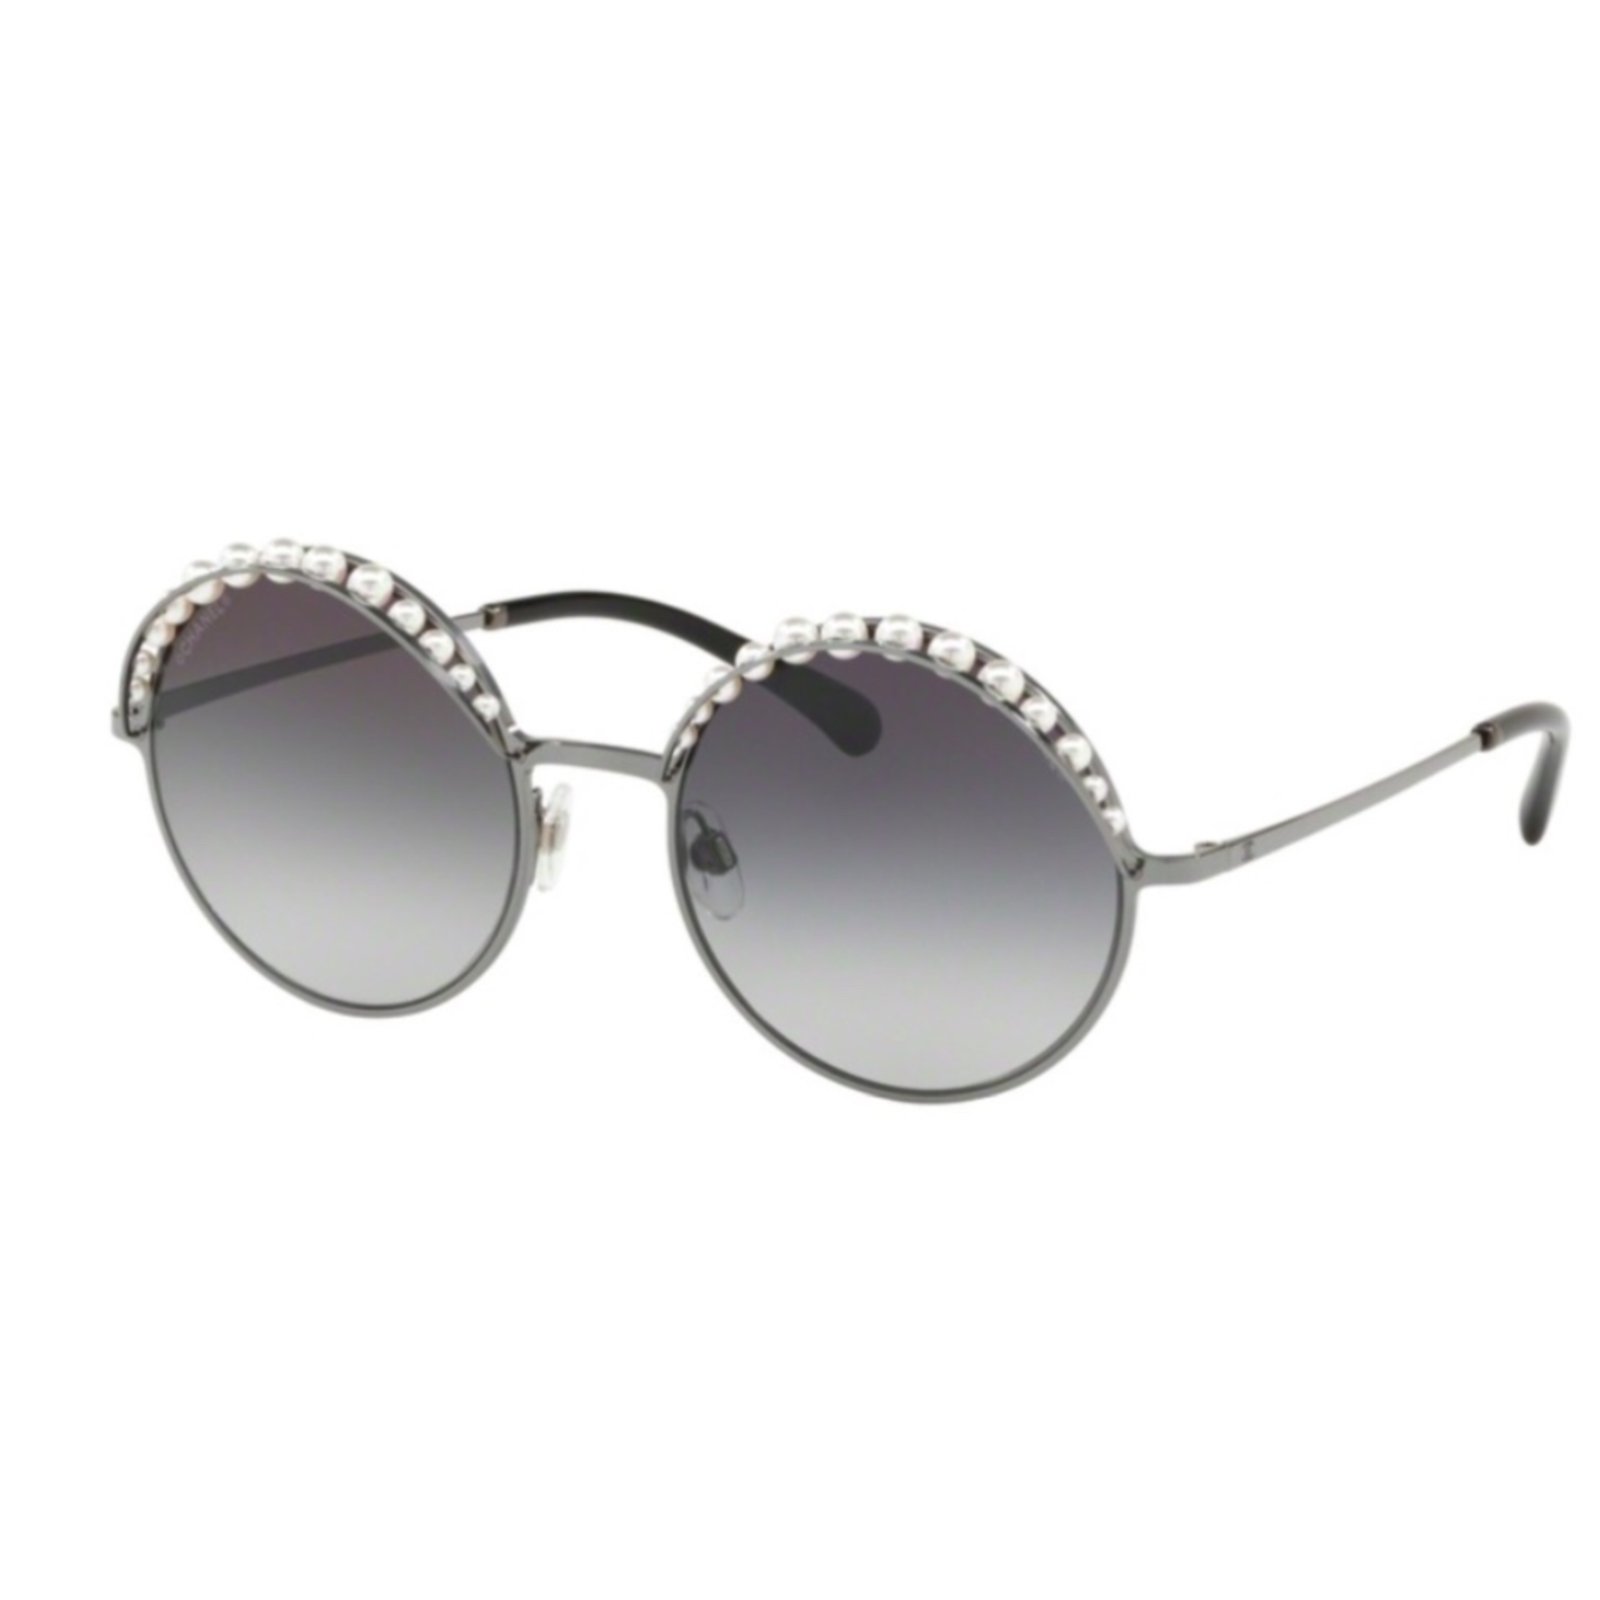 Sunglasses Chanel Chanel 5449 1228/S6 Gradient Oversized Shield Sunglasses in Dark Green Acetate